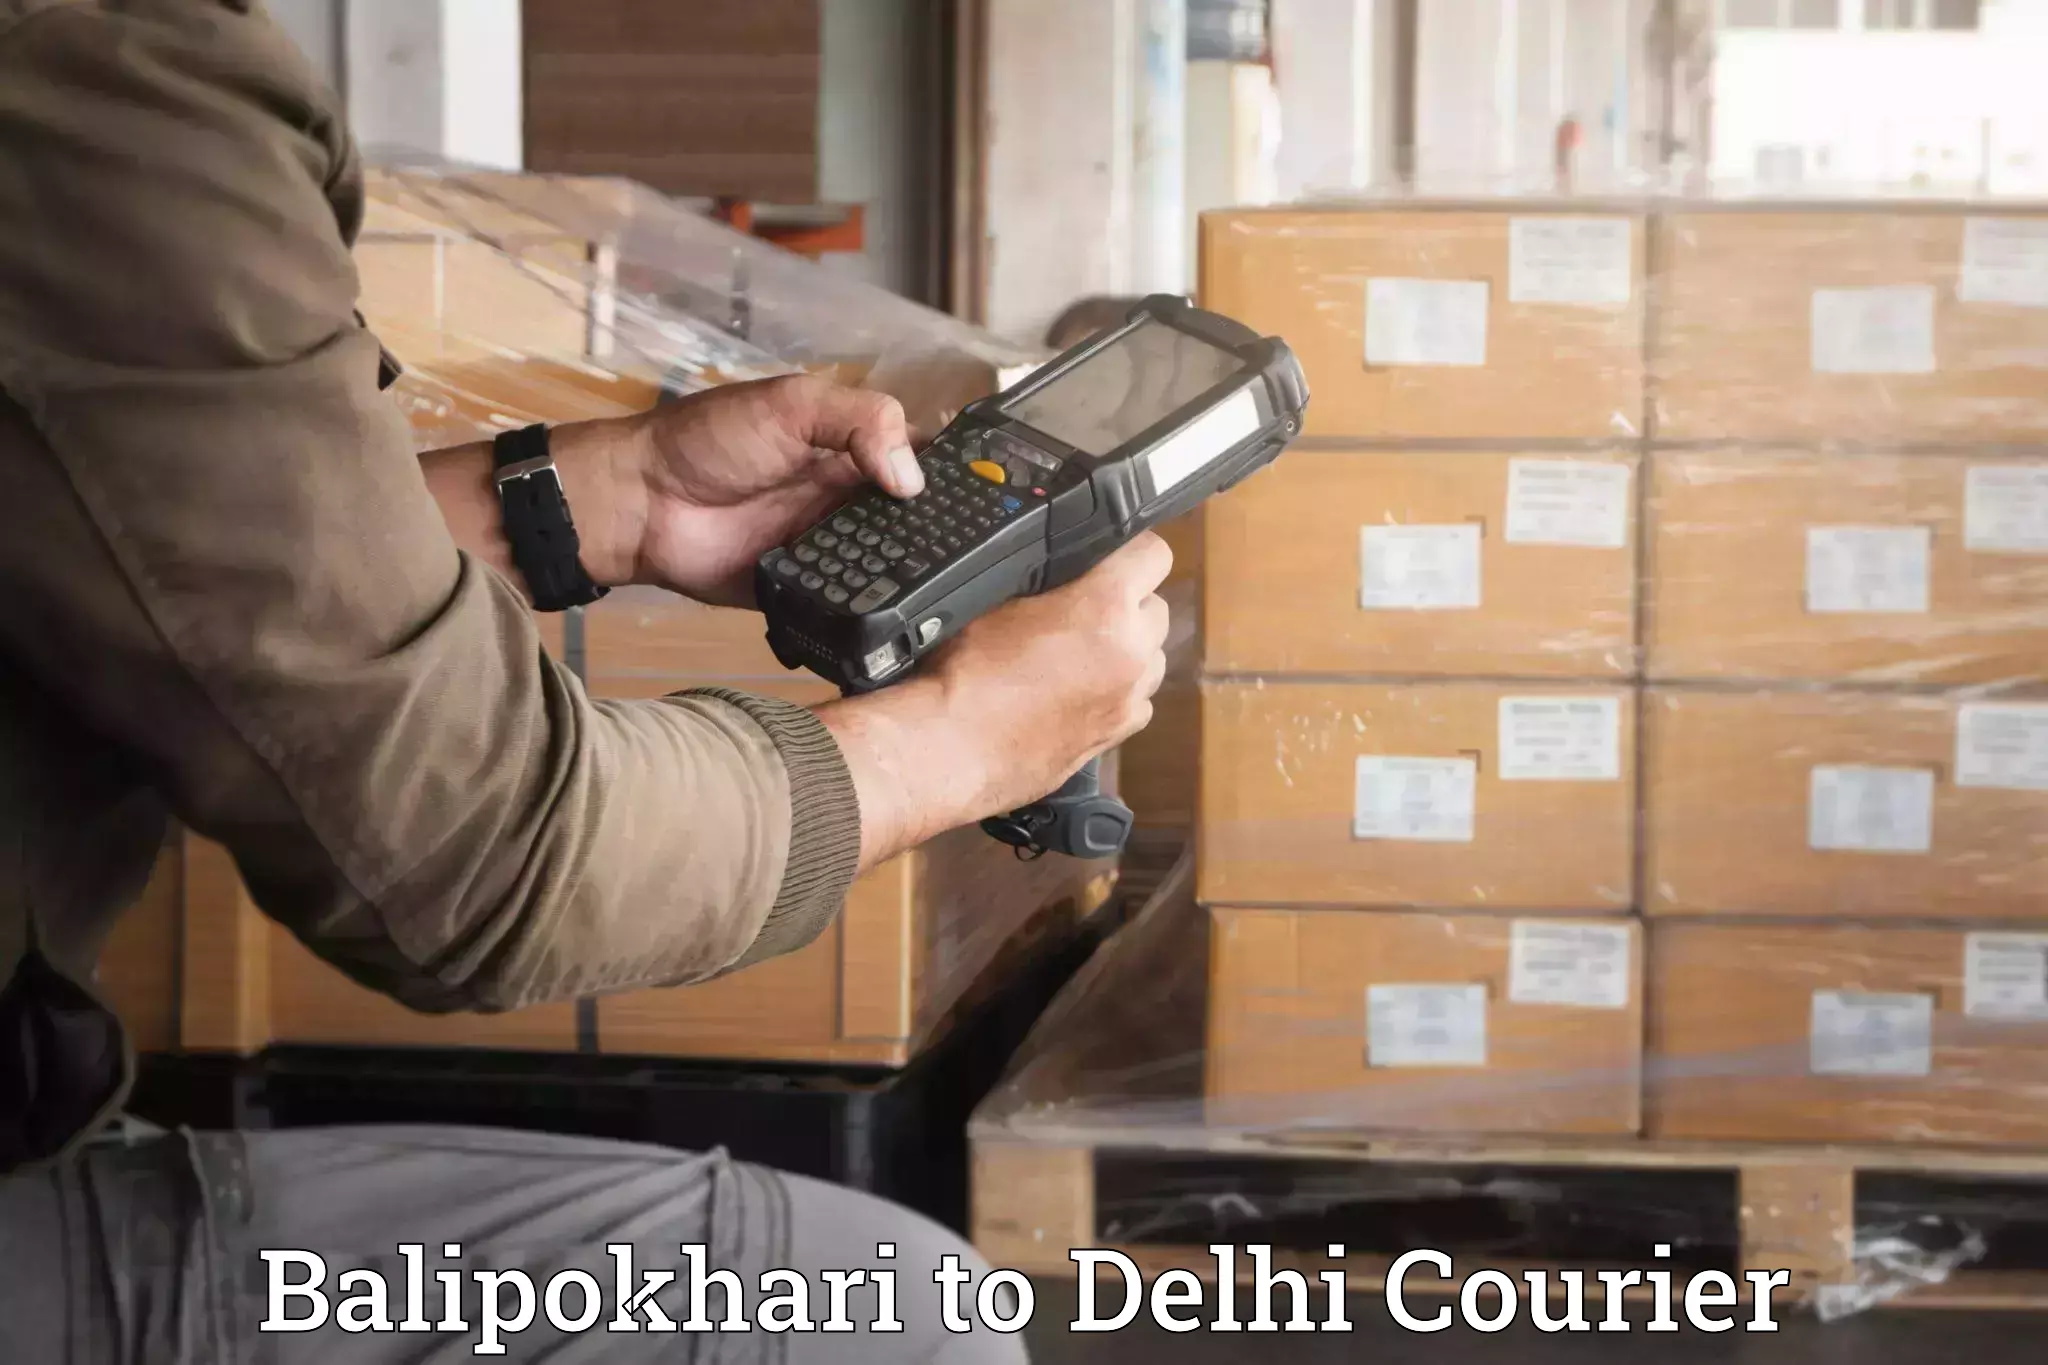 Furniture transport specialists Balipokhari to NIT Delhi